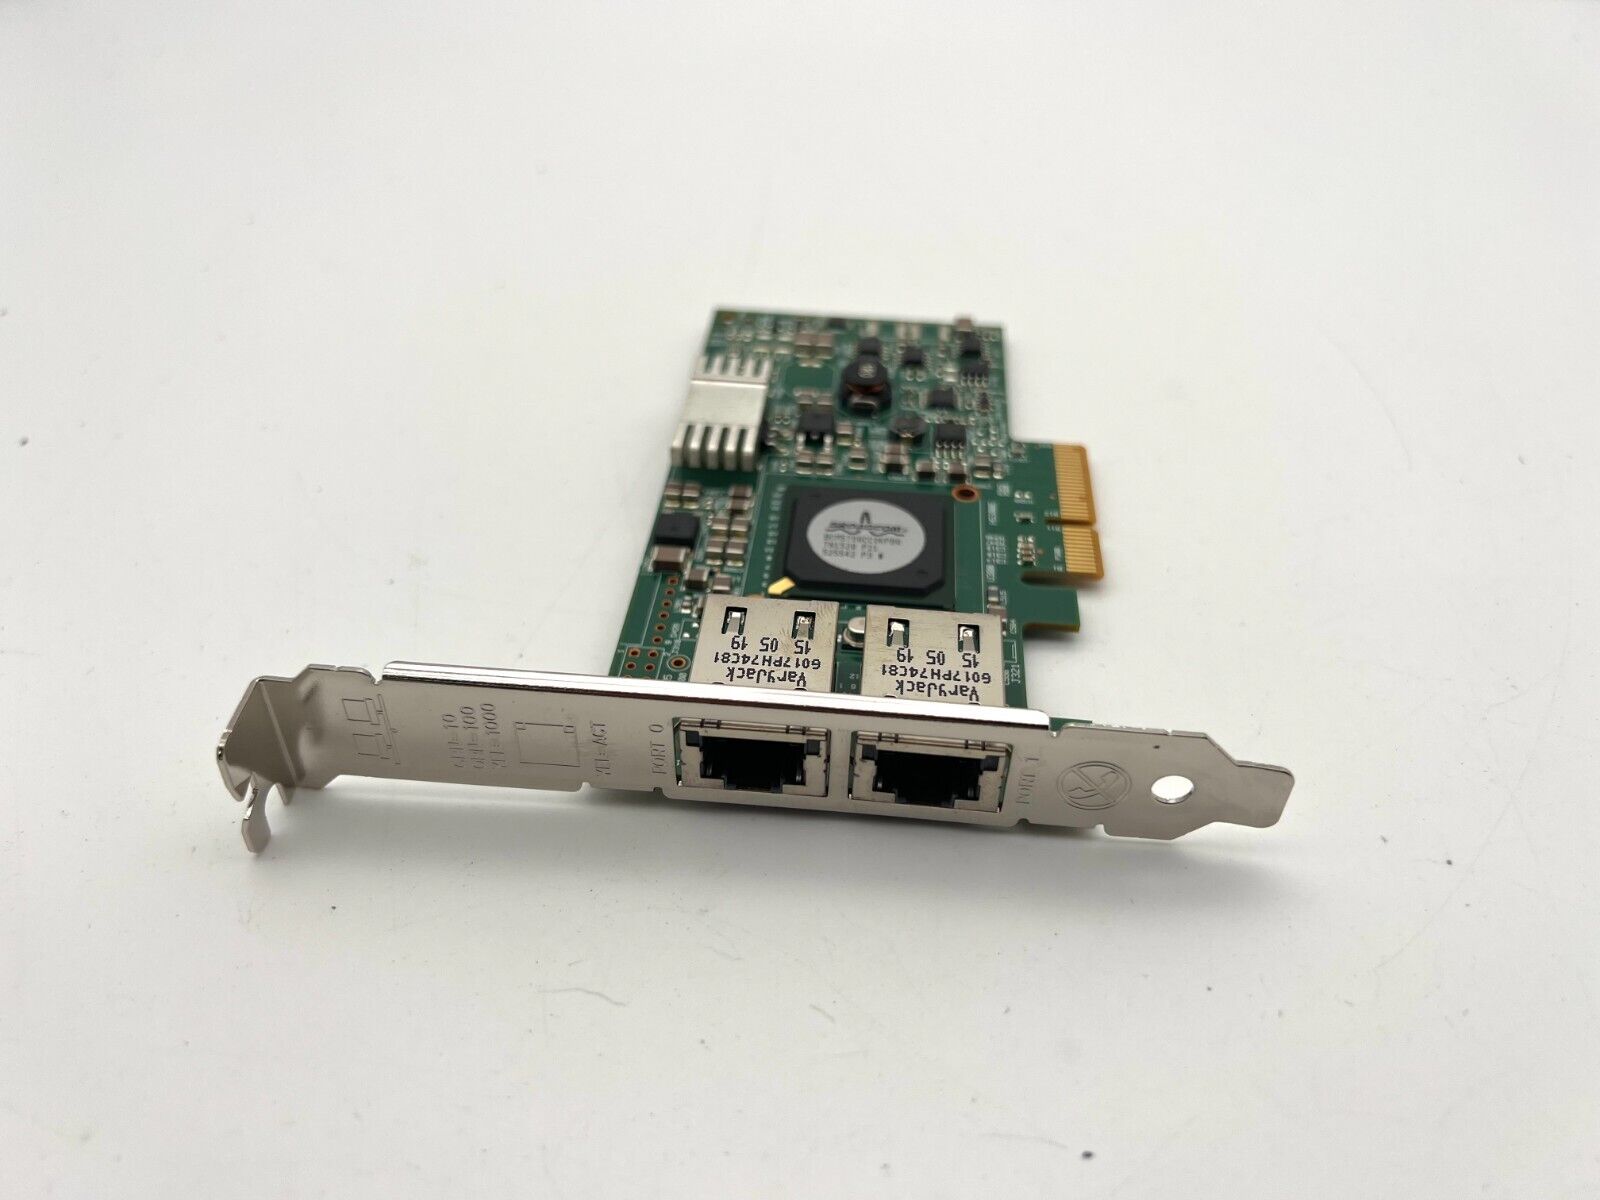 74-10899-01 Cisoc Dual Port 1GB Rj-45 Network Ethernet Server Card Broadcom